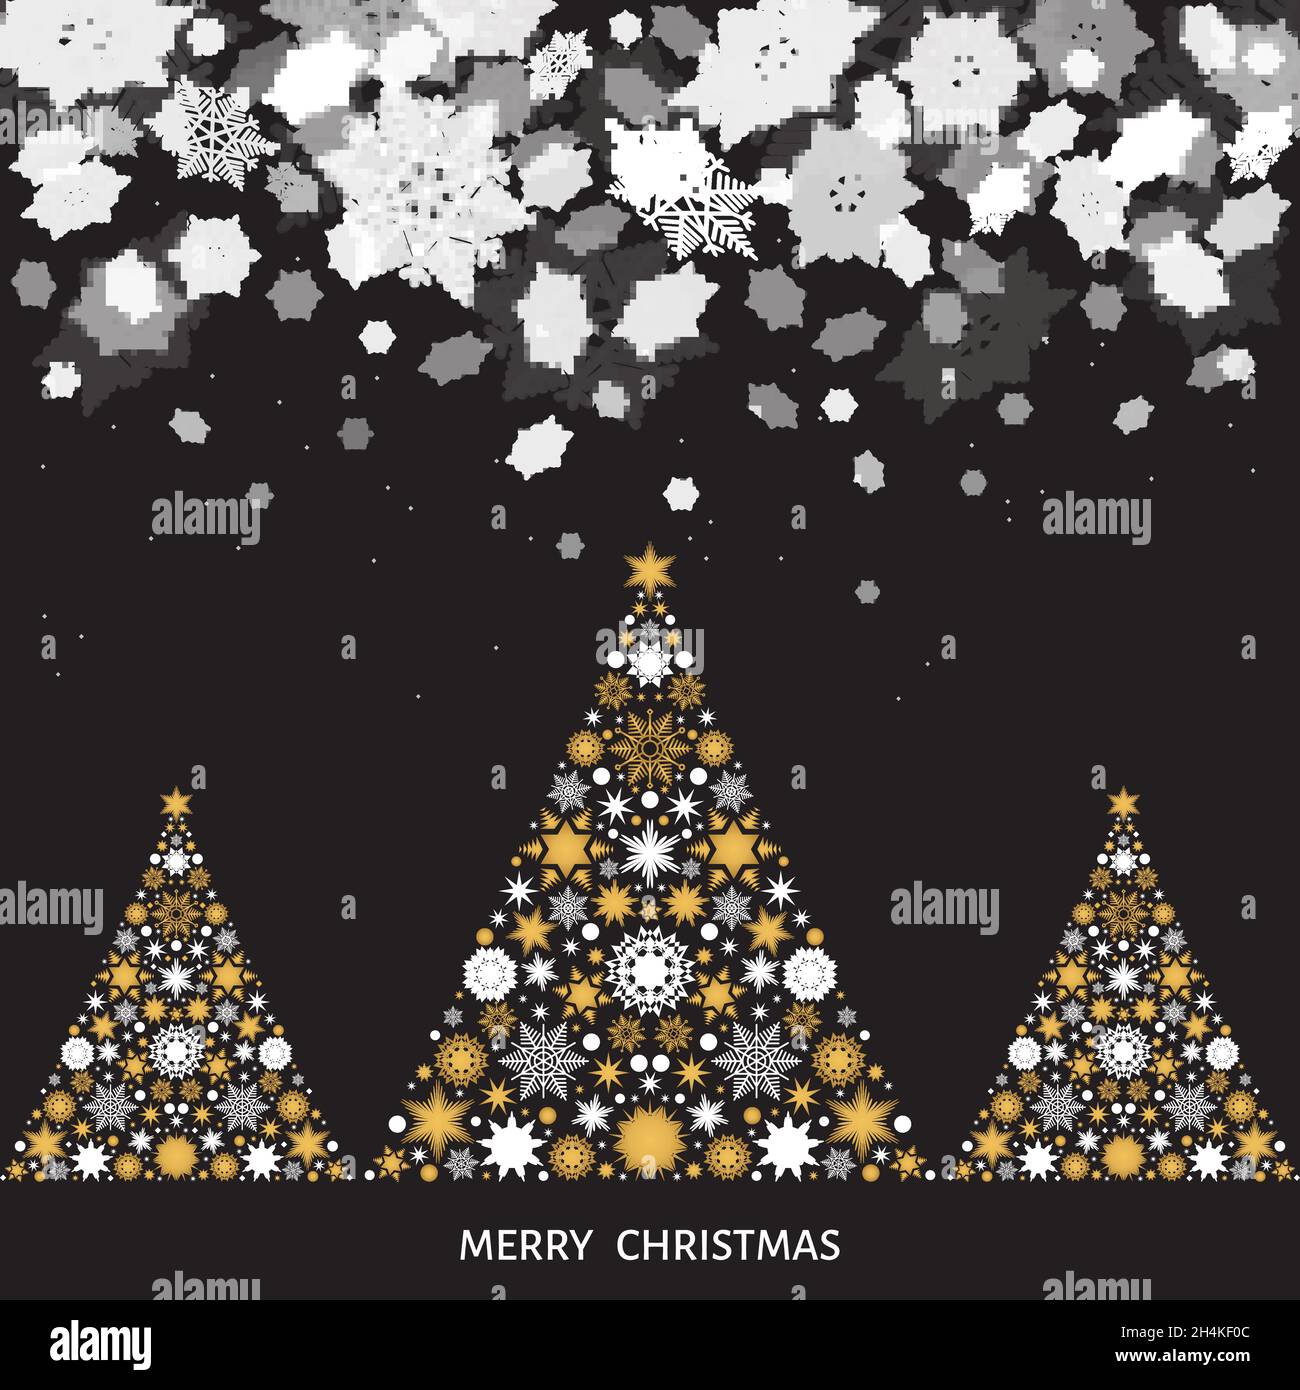 Weihnachten und Neujahr Landschaft. Weihnachtsbaum mit goldenen und weißen Schneeflocken. Schneefall. Vektor Winter Illustration für Grußkarte oder Party-Einladung Stock Vektor